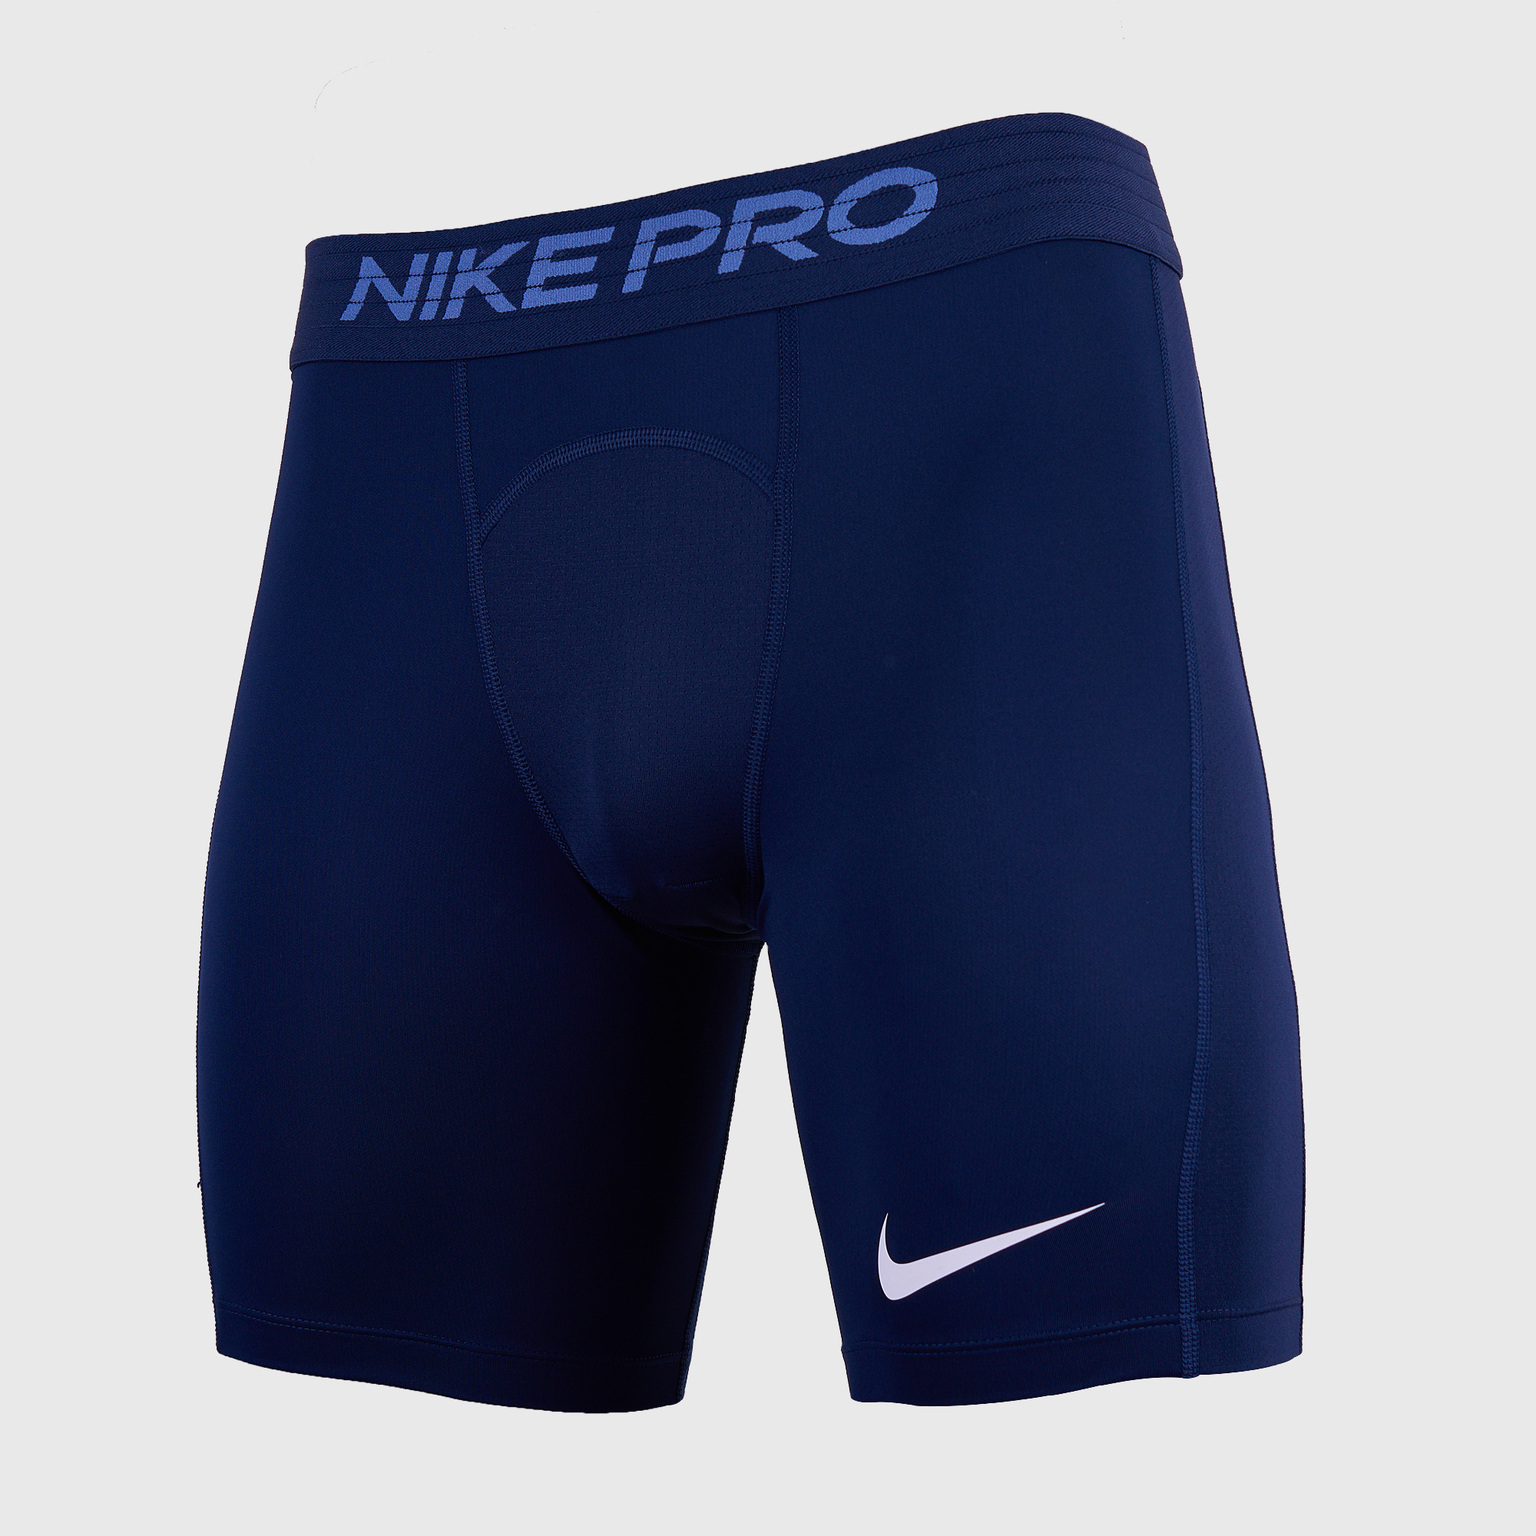 Белье шорты Nike Pro BV5635-452